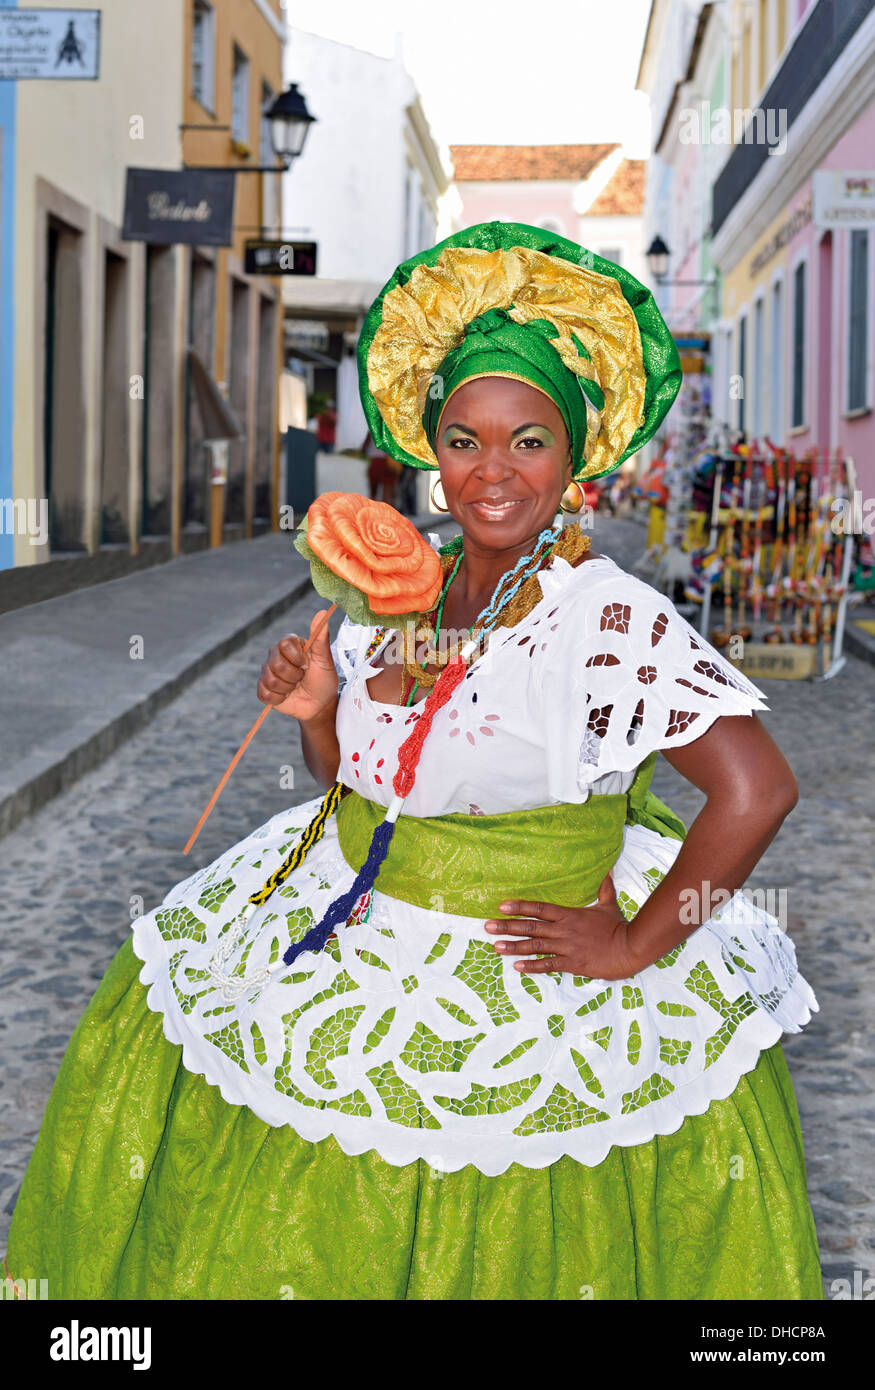 Brasil, Bahia: 'Baiana' Ana Cristina en el tradicional vestido de Candomblé en el centro histórico de Salvador da Bahia Foto de stock